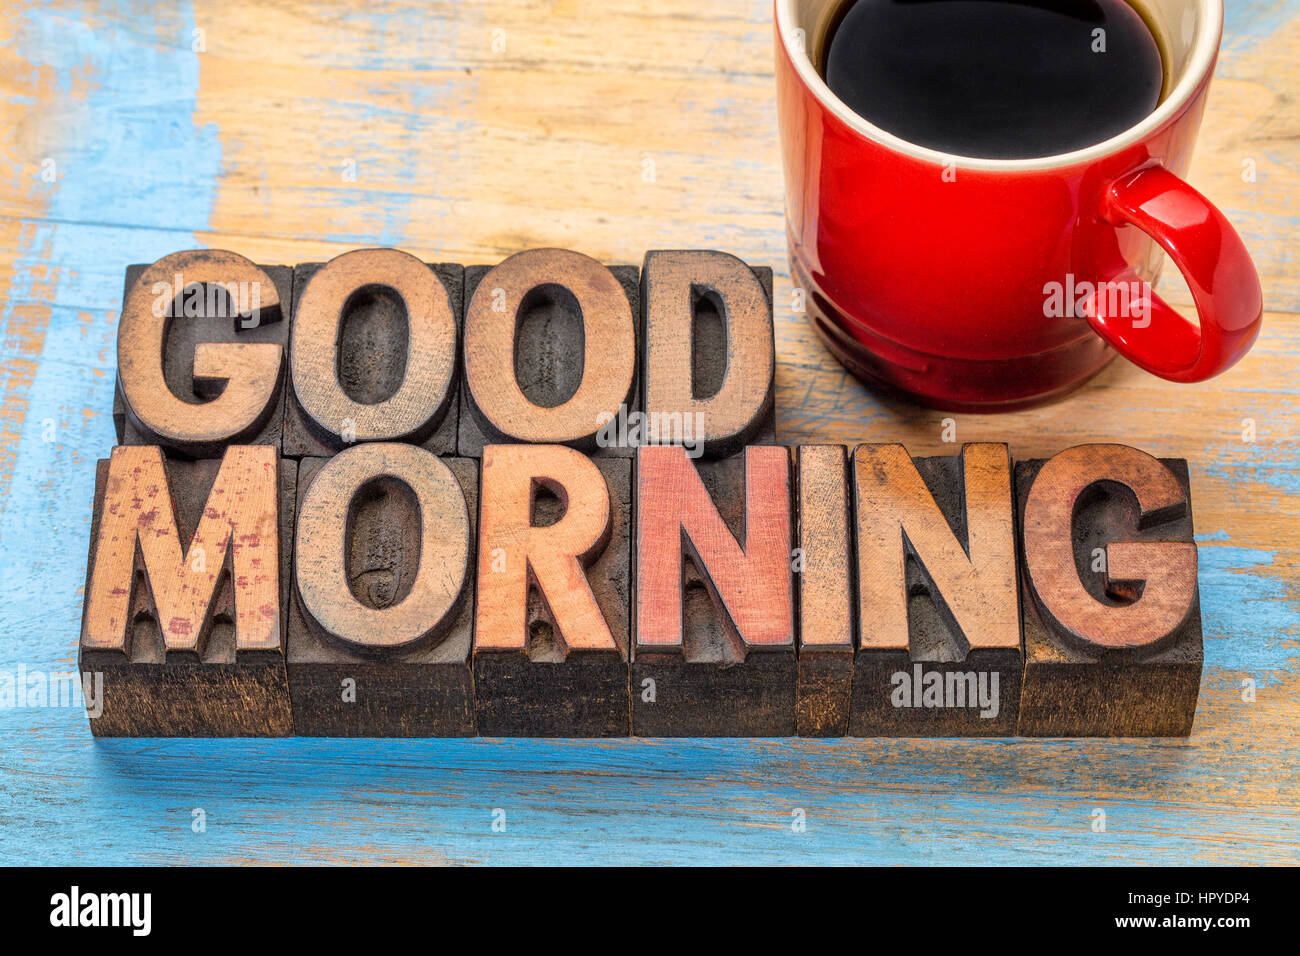 Buona mattina banner in rilievografia vintage tipo legno blocchi con una tazza di caffè Foto Stock